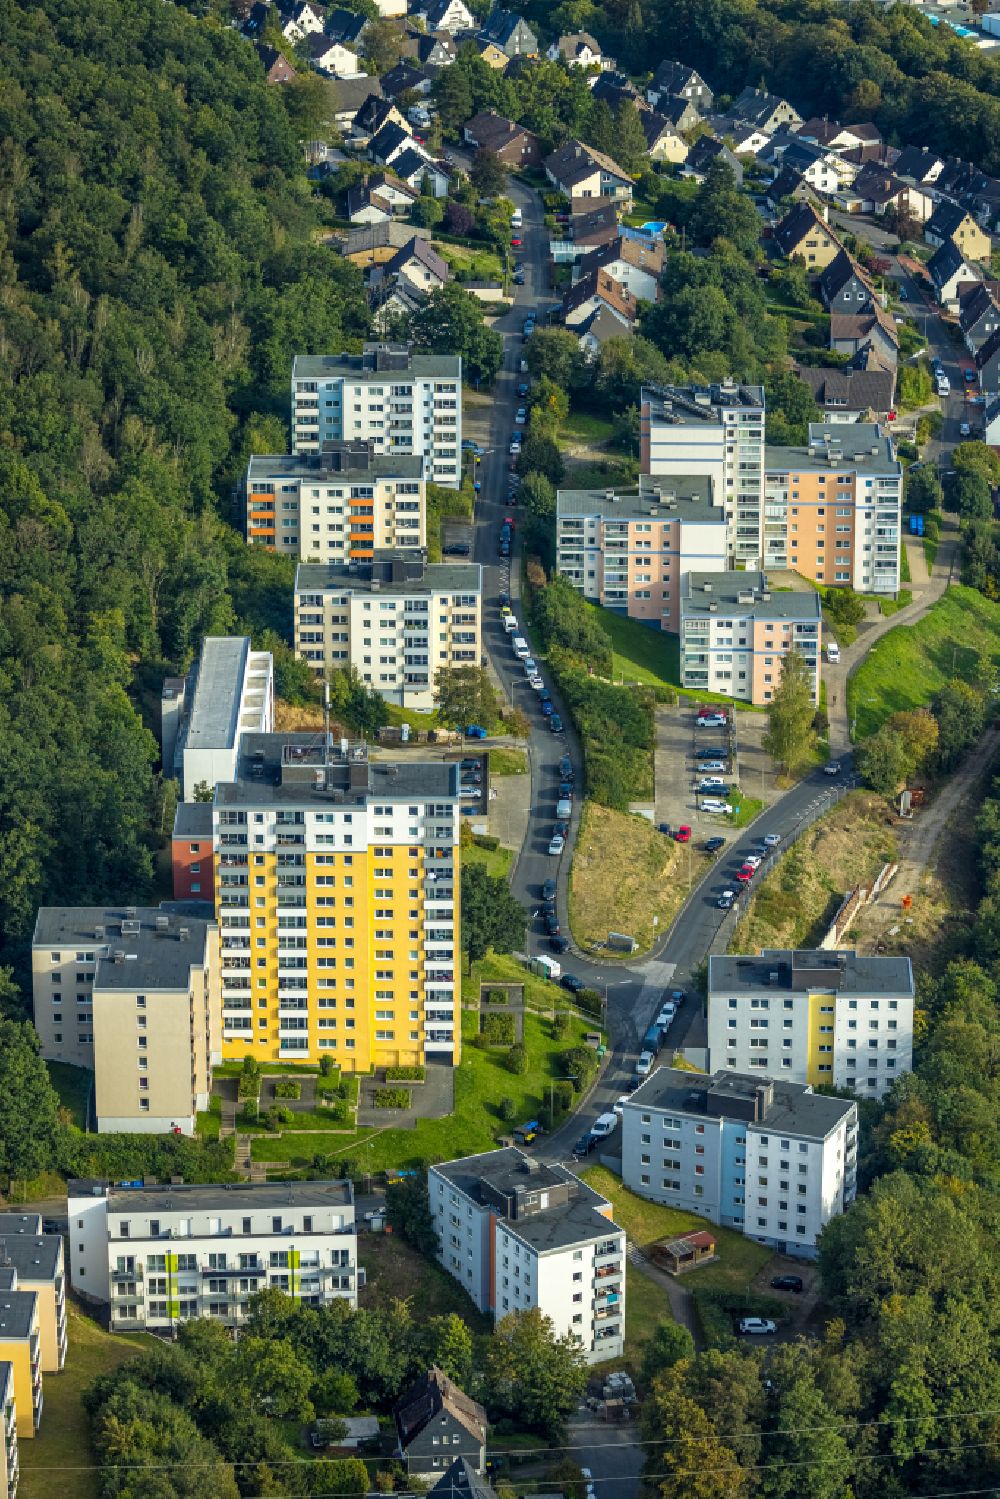 Birlenbach aus der Vogelperspektive: Plattenbau- Hochhaus- Wohnsiedlung in Birlenbach im Bundesland Nordrhein-Westfalen, Deutschland